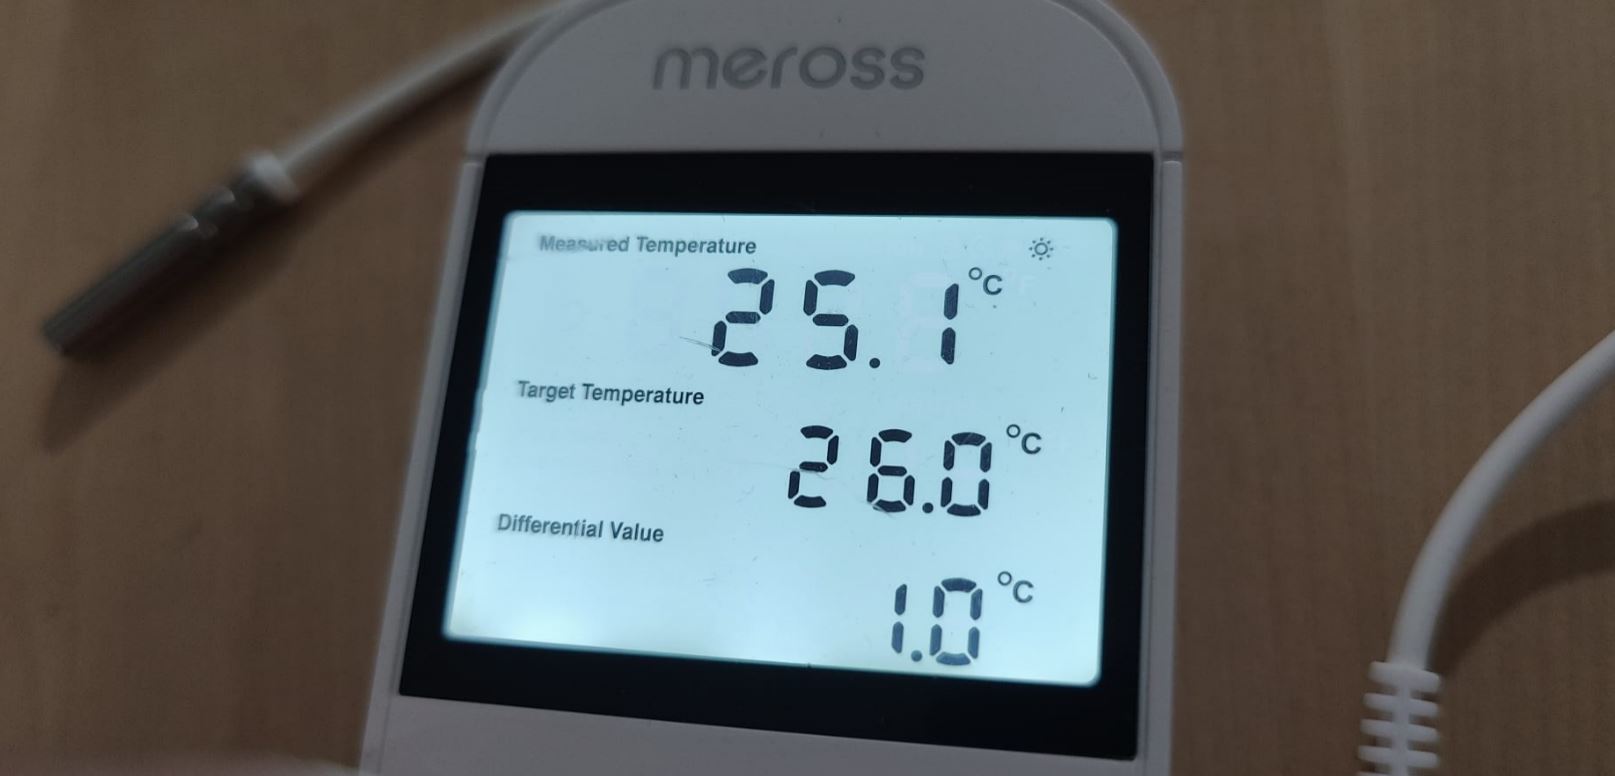 Cabezal termostático inteligente para radiador Meross MTS150, control App,  Wi-Fi - Casa del Futuro